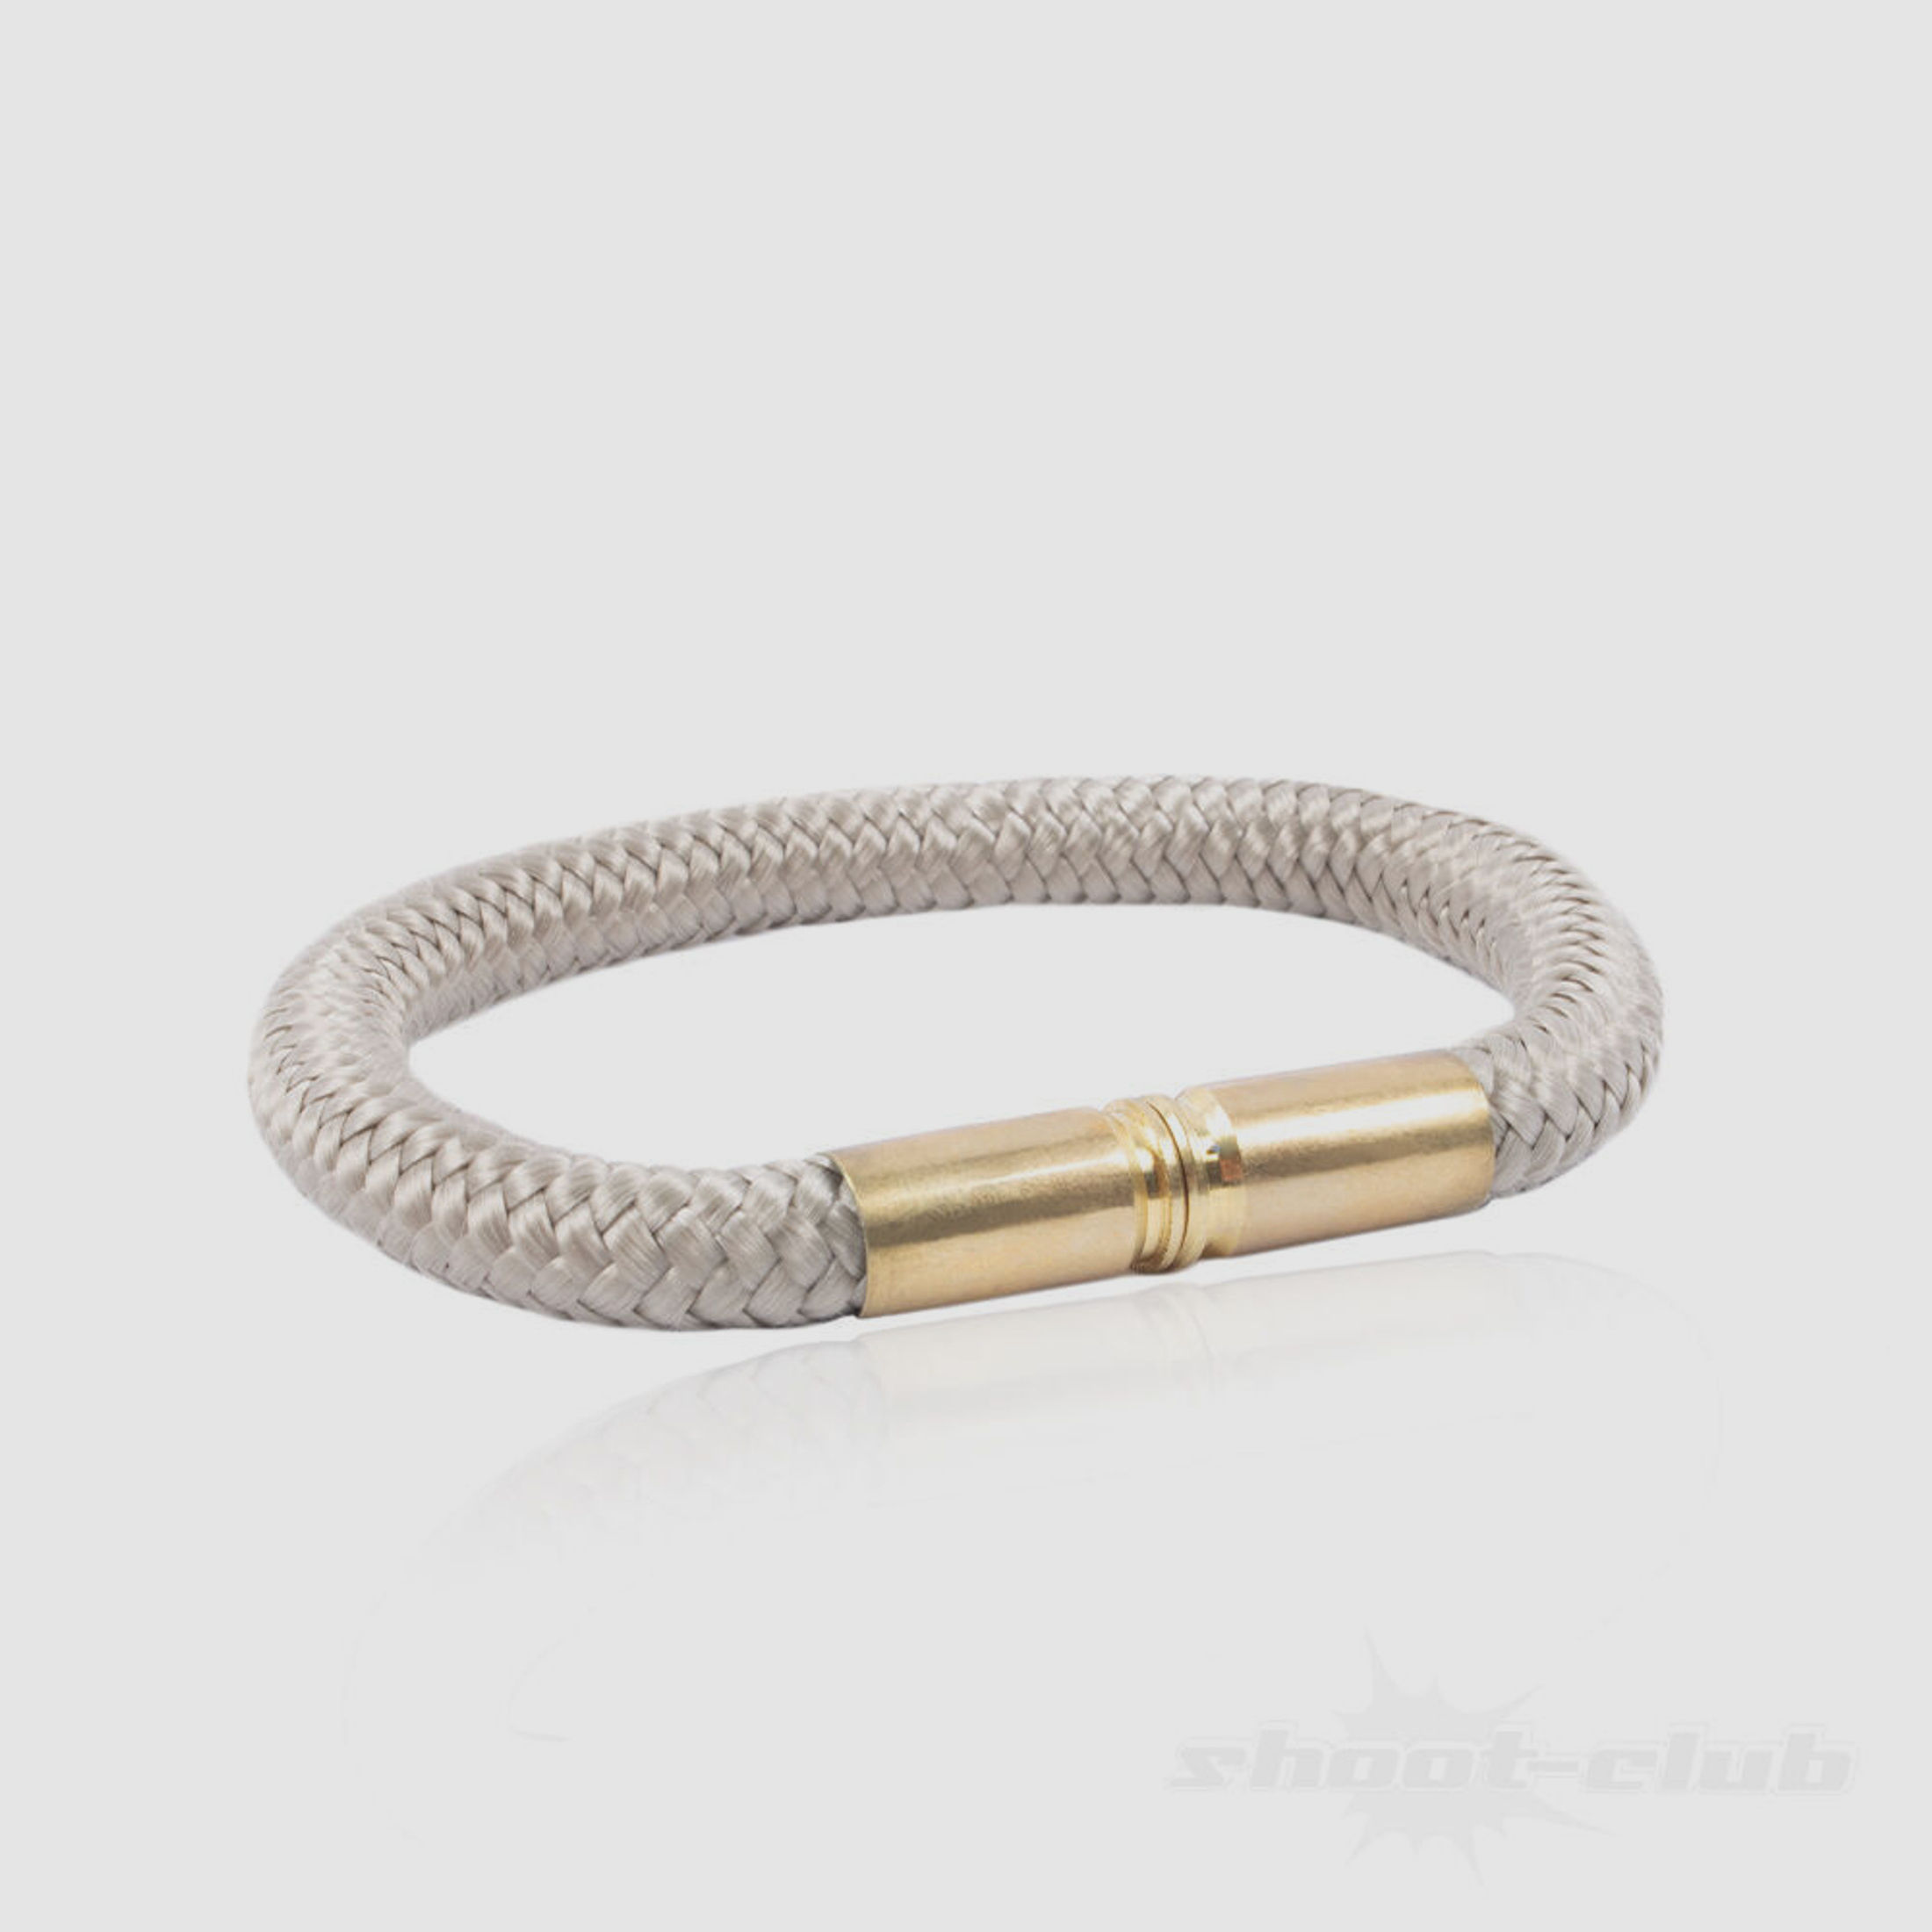 Copper & Brass Armband Bullet Band 9mm Patronenhülse Desert Tan Gr XL